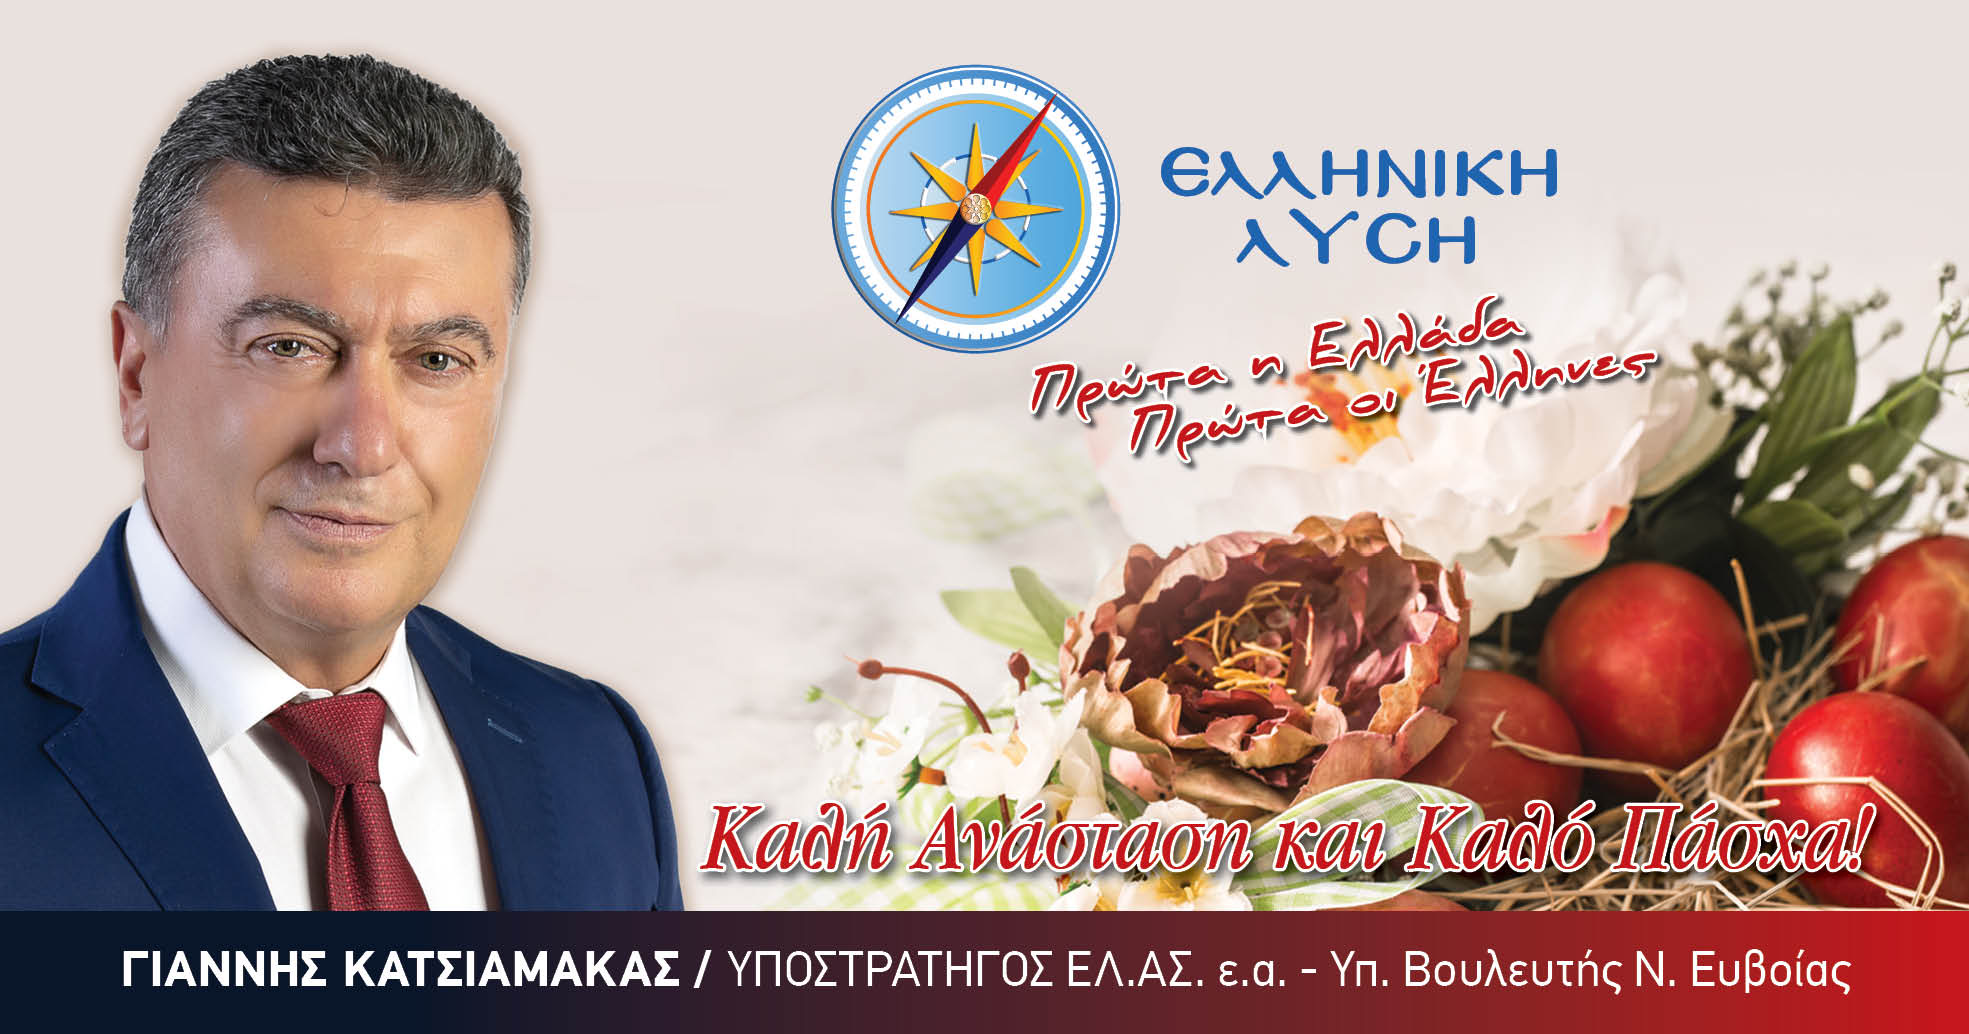 Ευχές από τον υποψήφιο βουλευτή της Ελληνικής Λύσης, Γιάννη Κατσιαμάκα